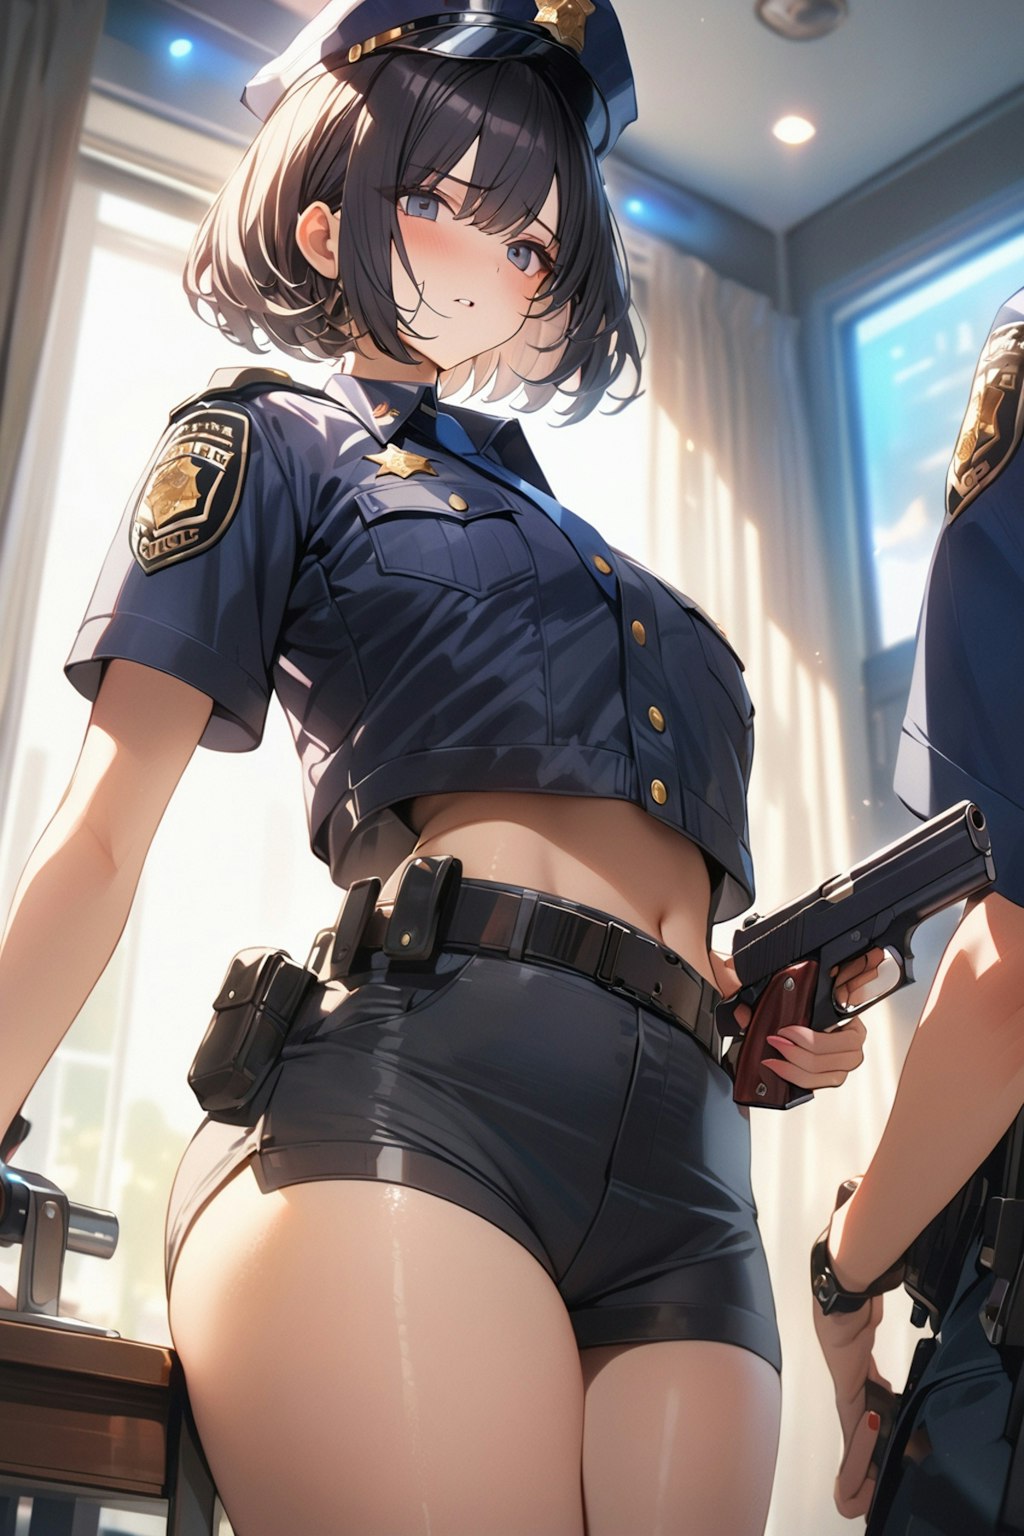 婦人警官の日